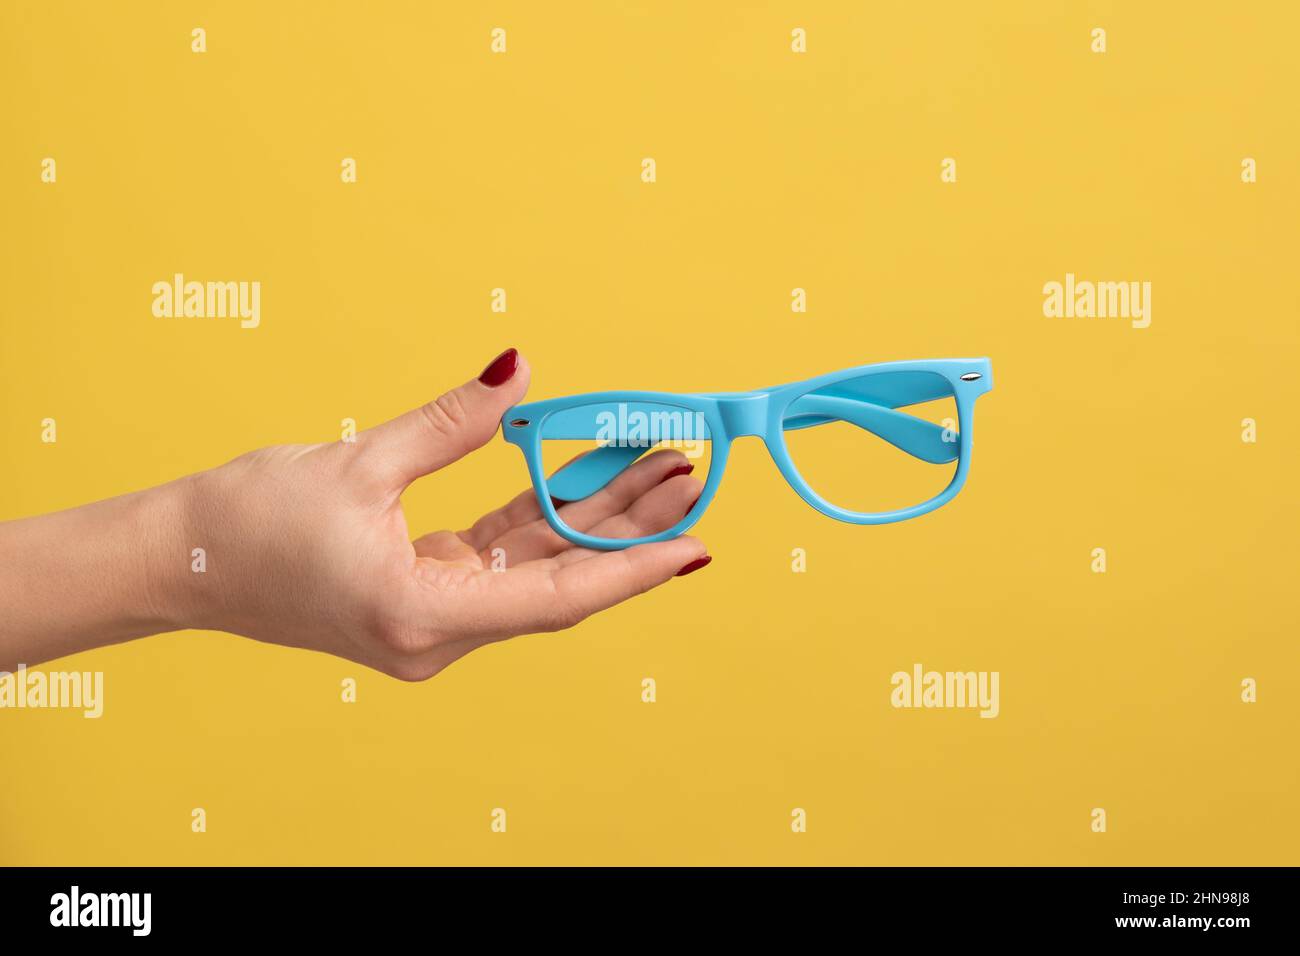 Profilansicht Nahaufnahme der Frau, die die Hand hält und einen blauen Brillenrahmen zeigt. Innenaufnahme des Studios isoliert auf gelbem Hintergrund. Stockfoto